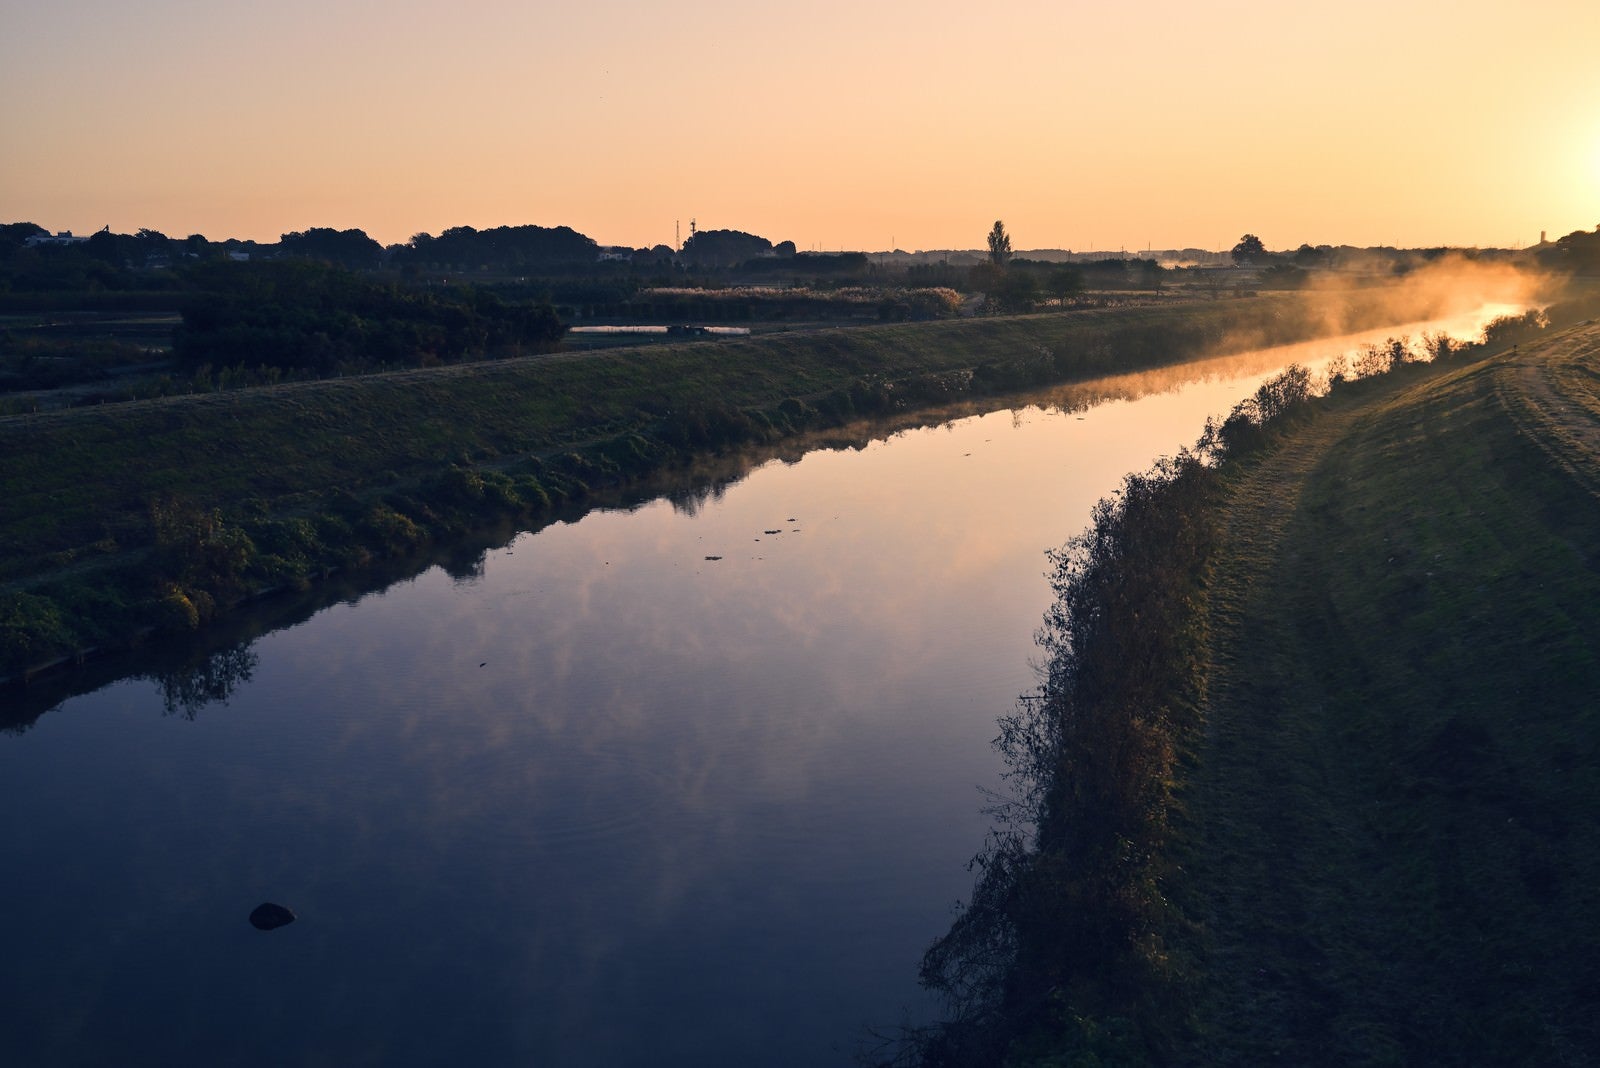 「夜明けを迎える水鏡の川」の写真